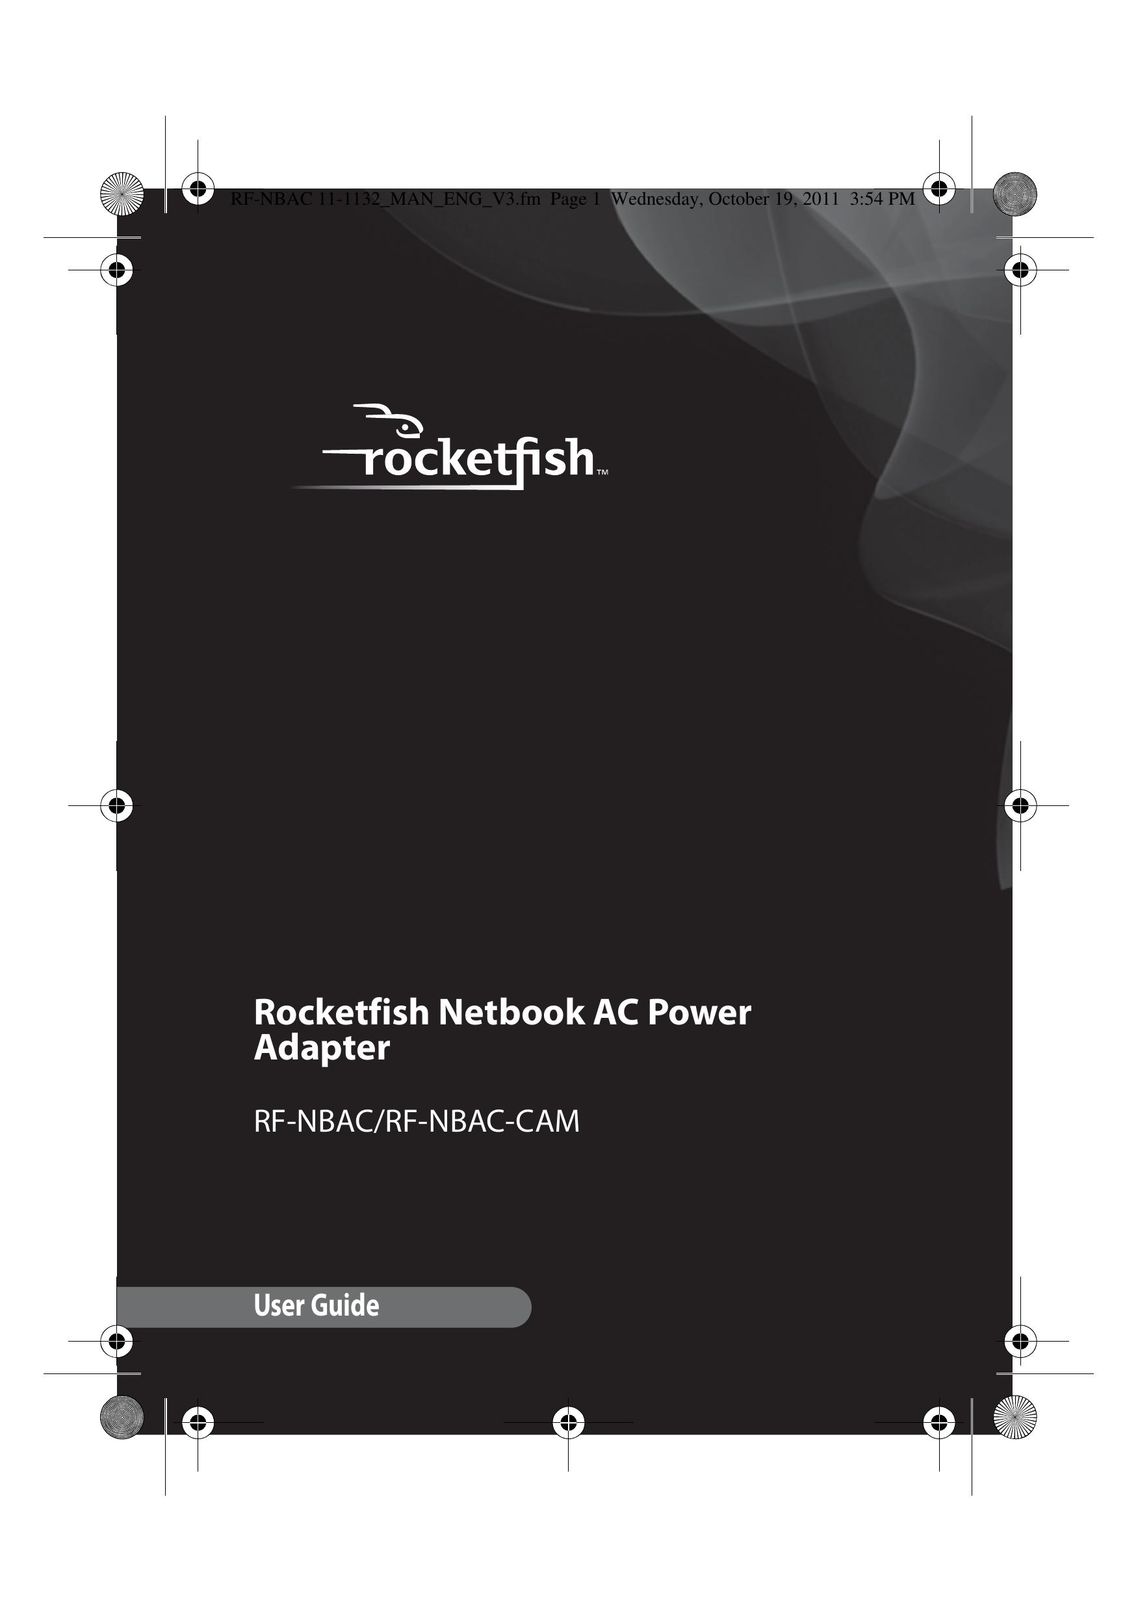 RocketFish RF-NBAC Network Card User Manual